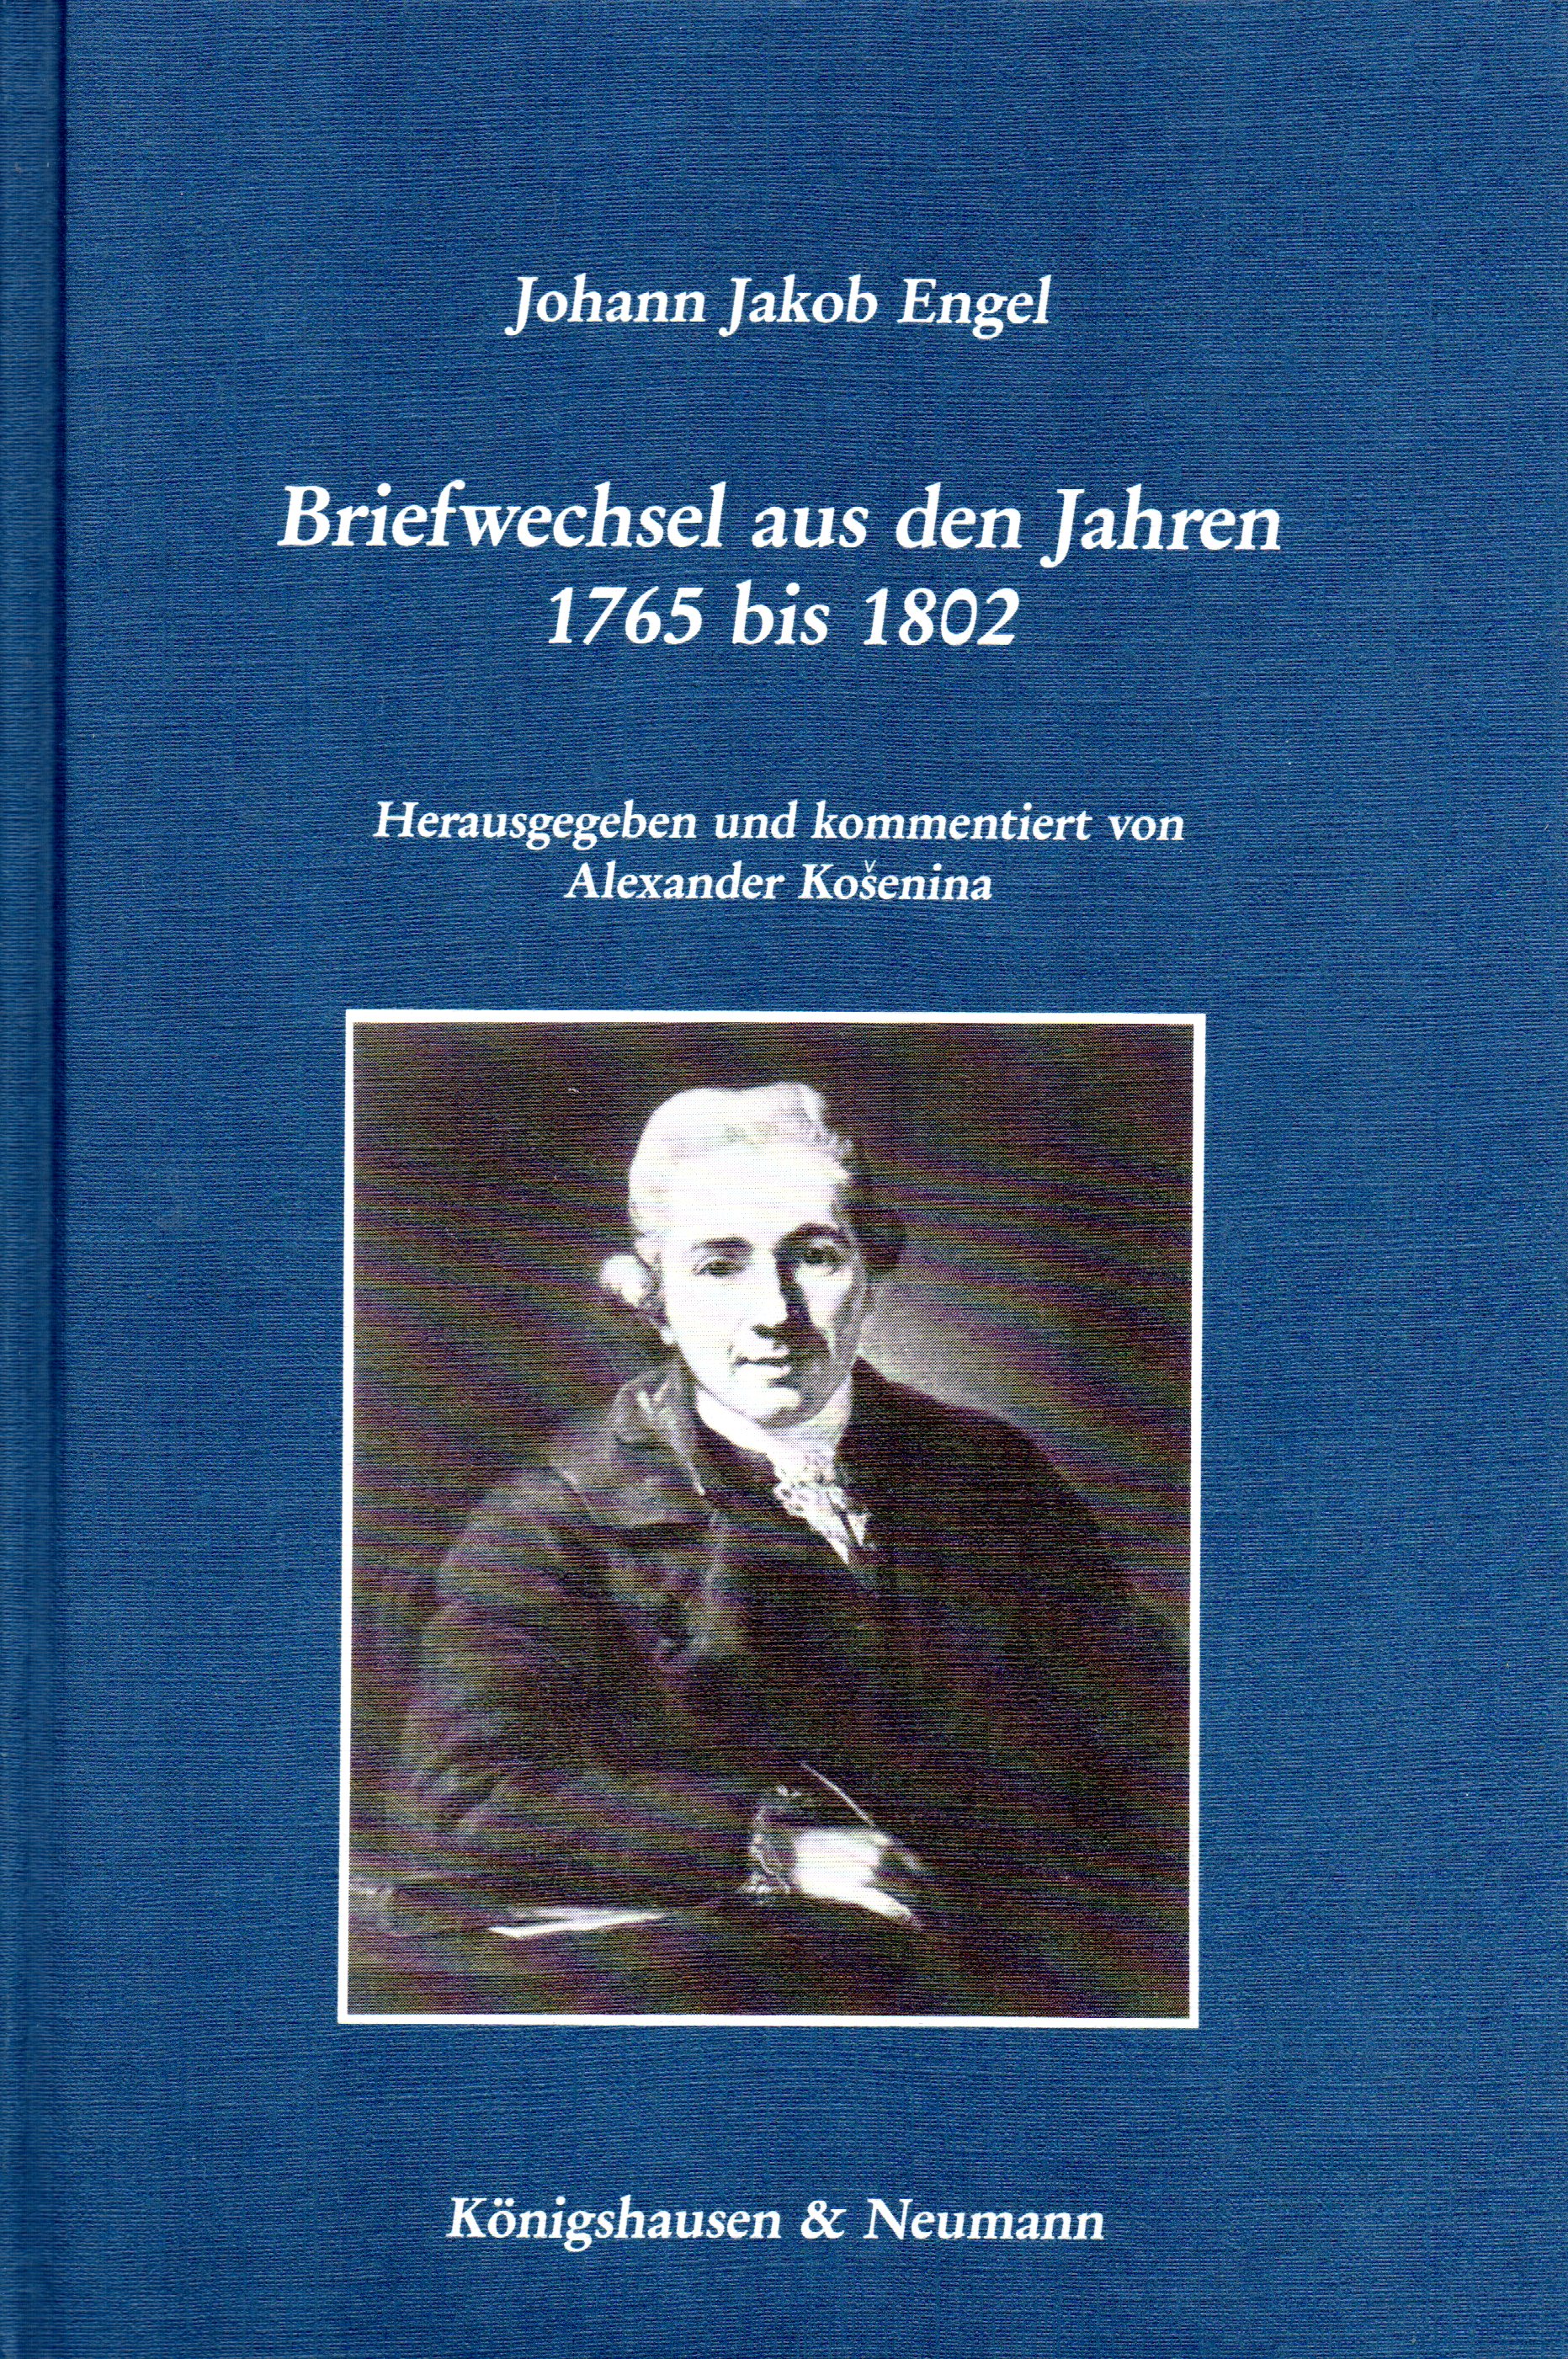 Briefwechsel aus den Jahren 1765 bis 1802 - Johann Jakob Engel